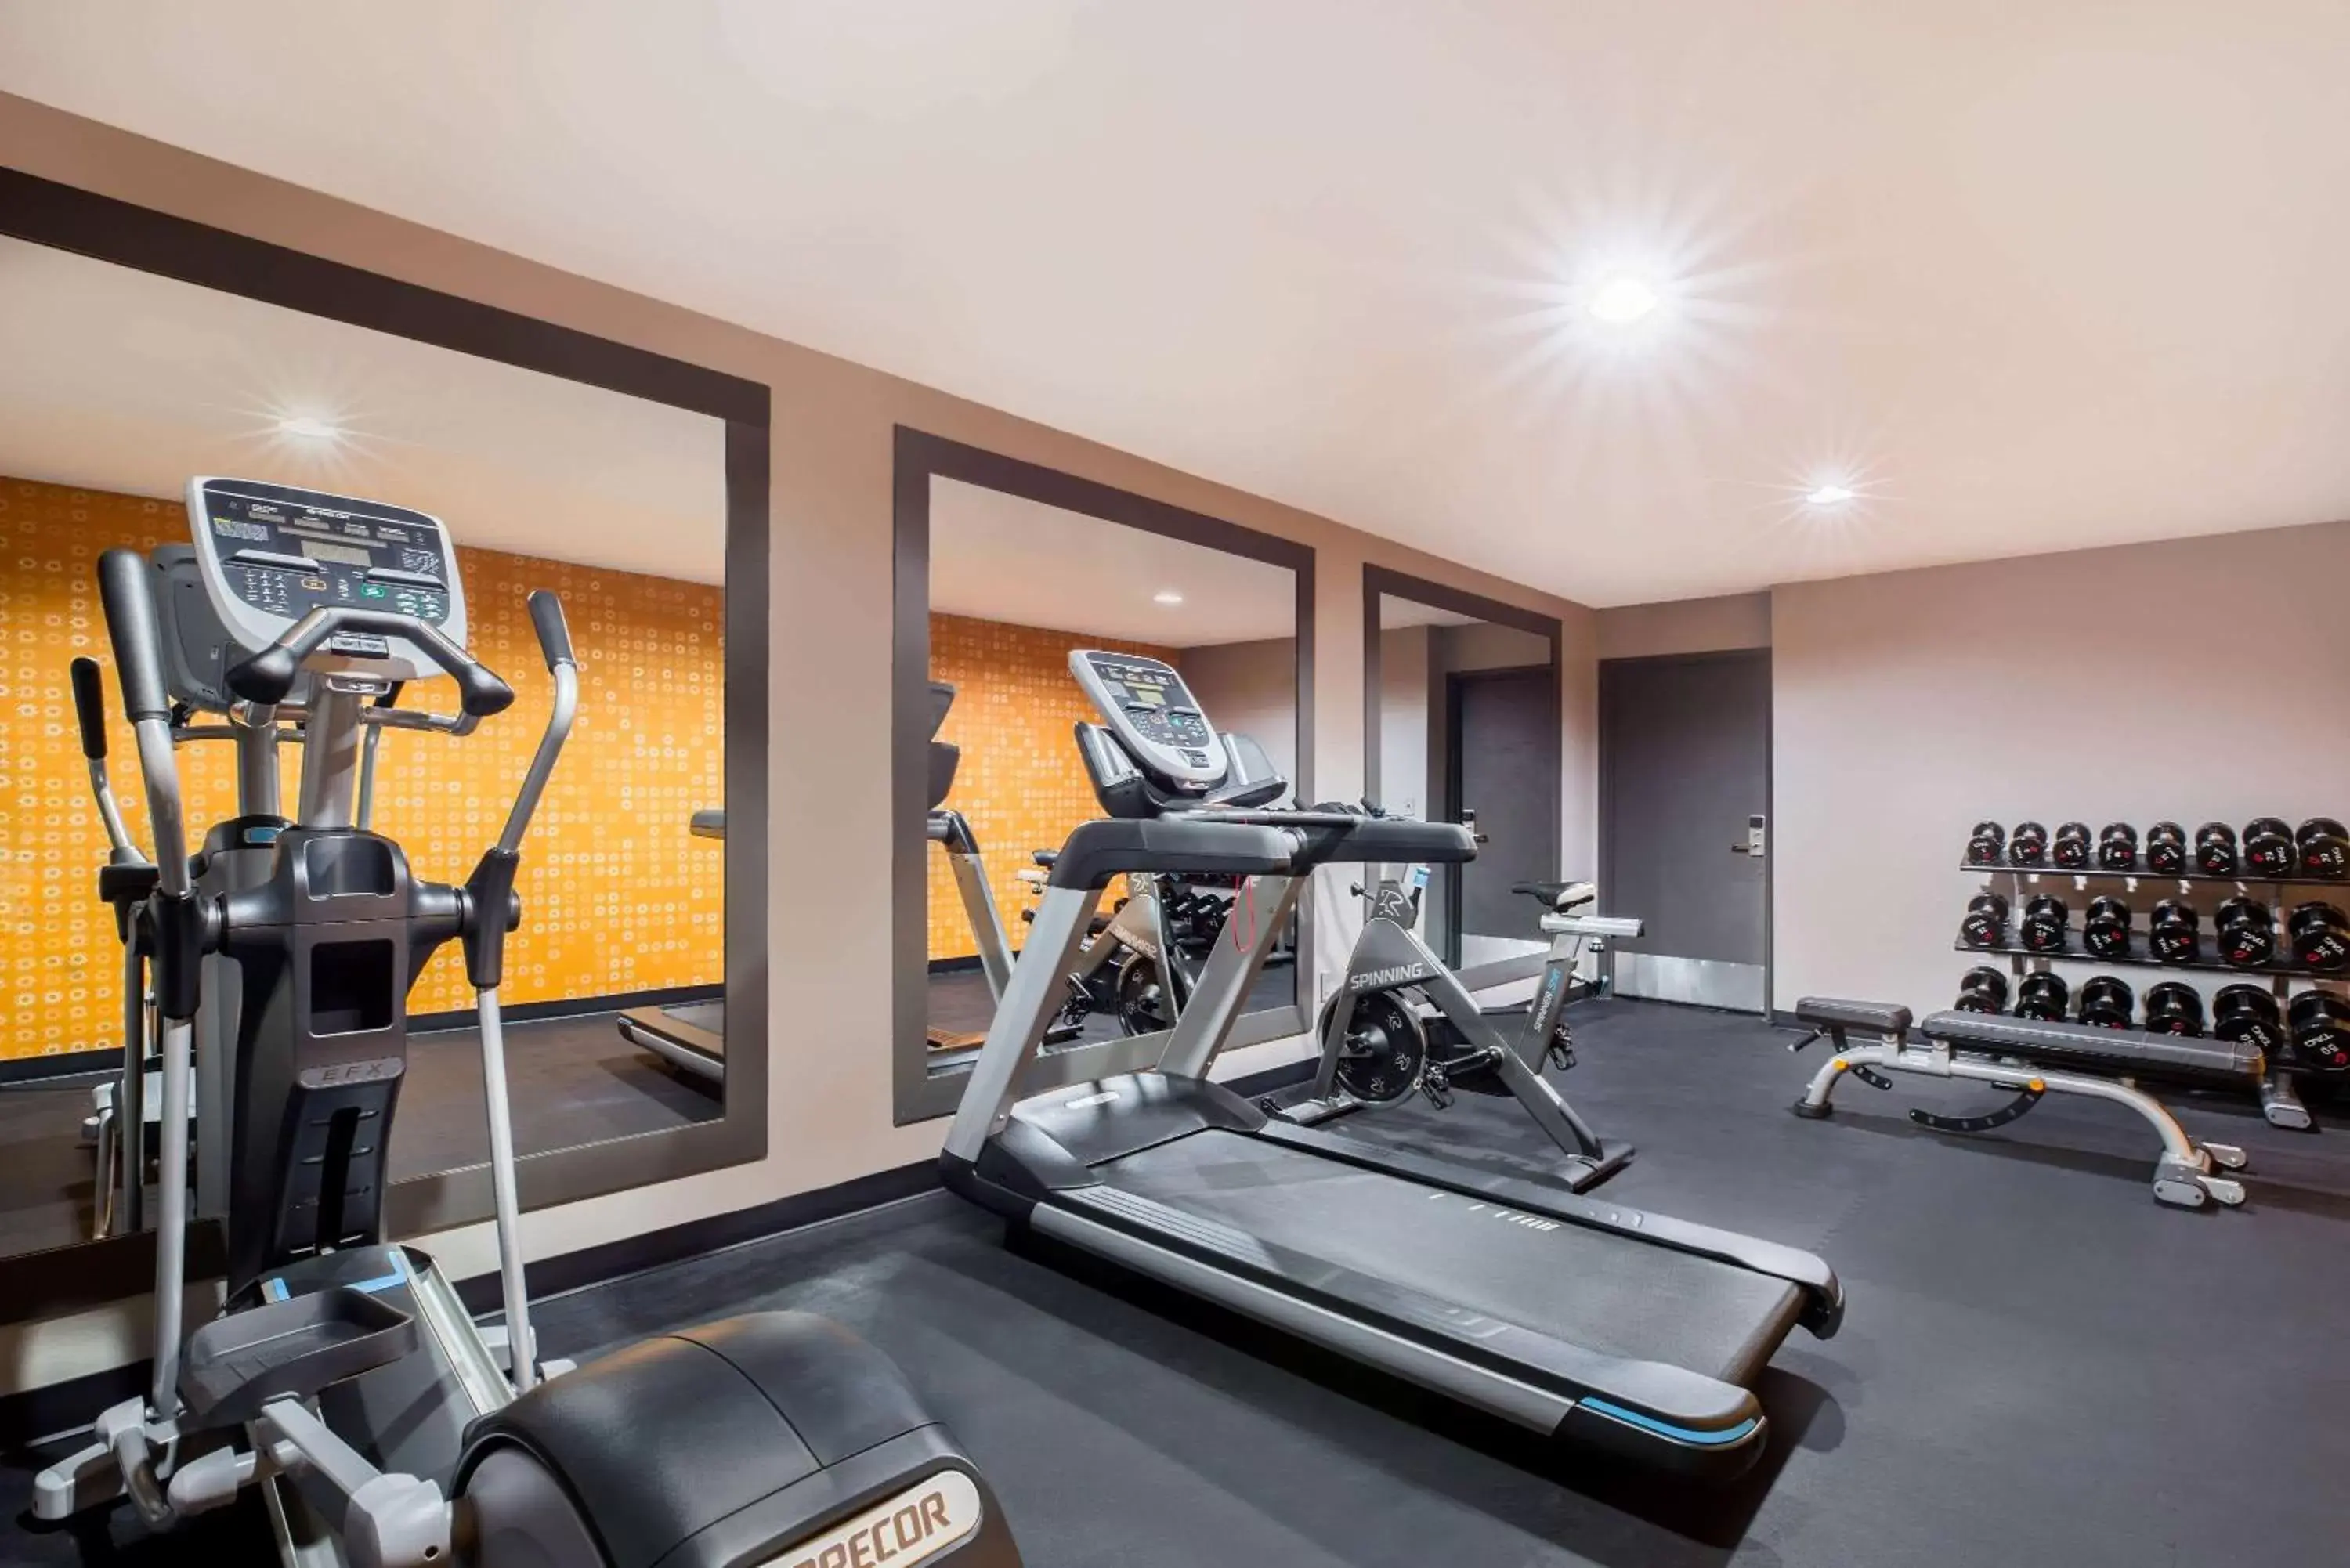 Fitness centre/facilities, Fitness Center/Facilities in La Quinta Inn by Wyndham Everett